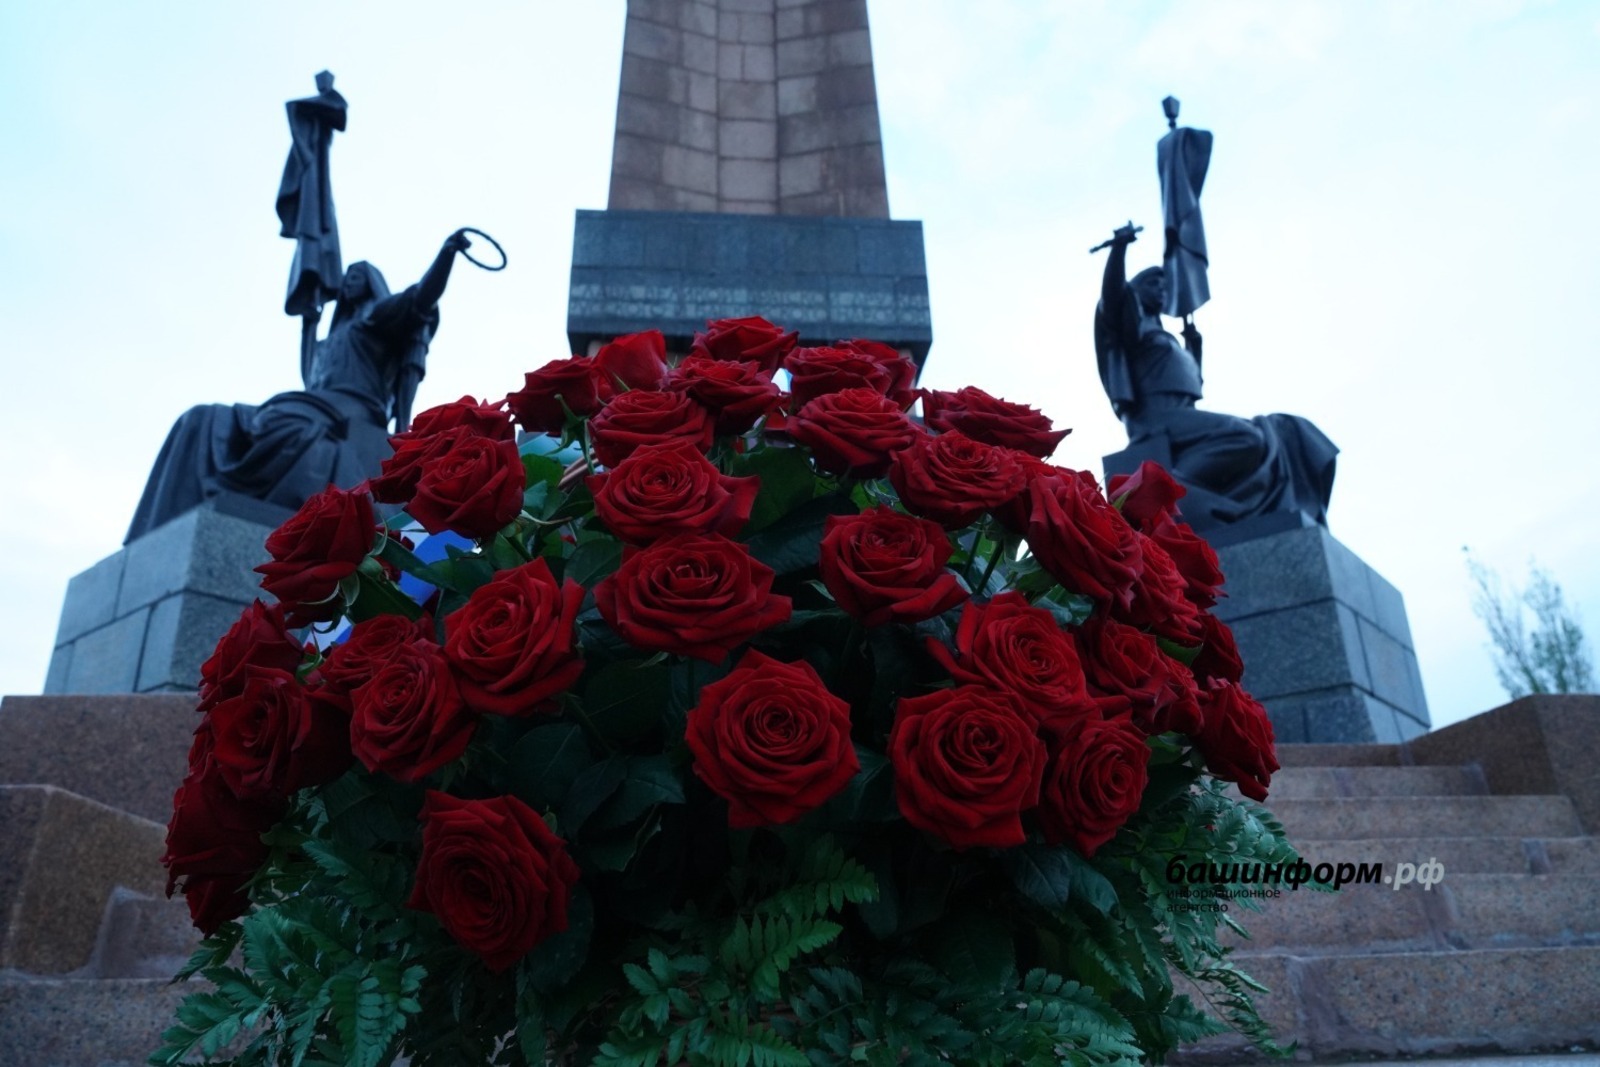 Радий Хабиров возложил цветы к Монументу Дружбы в честь Дня народного единства